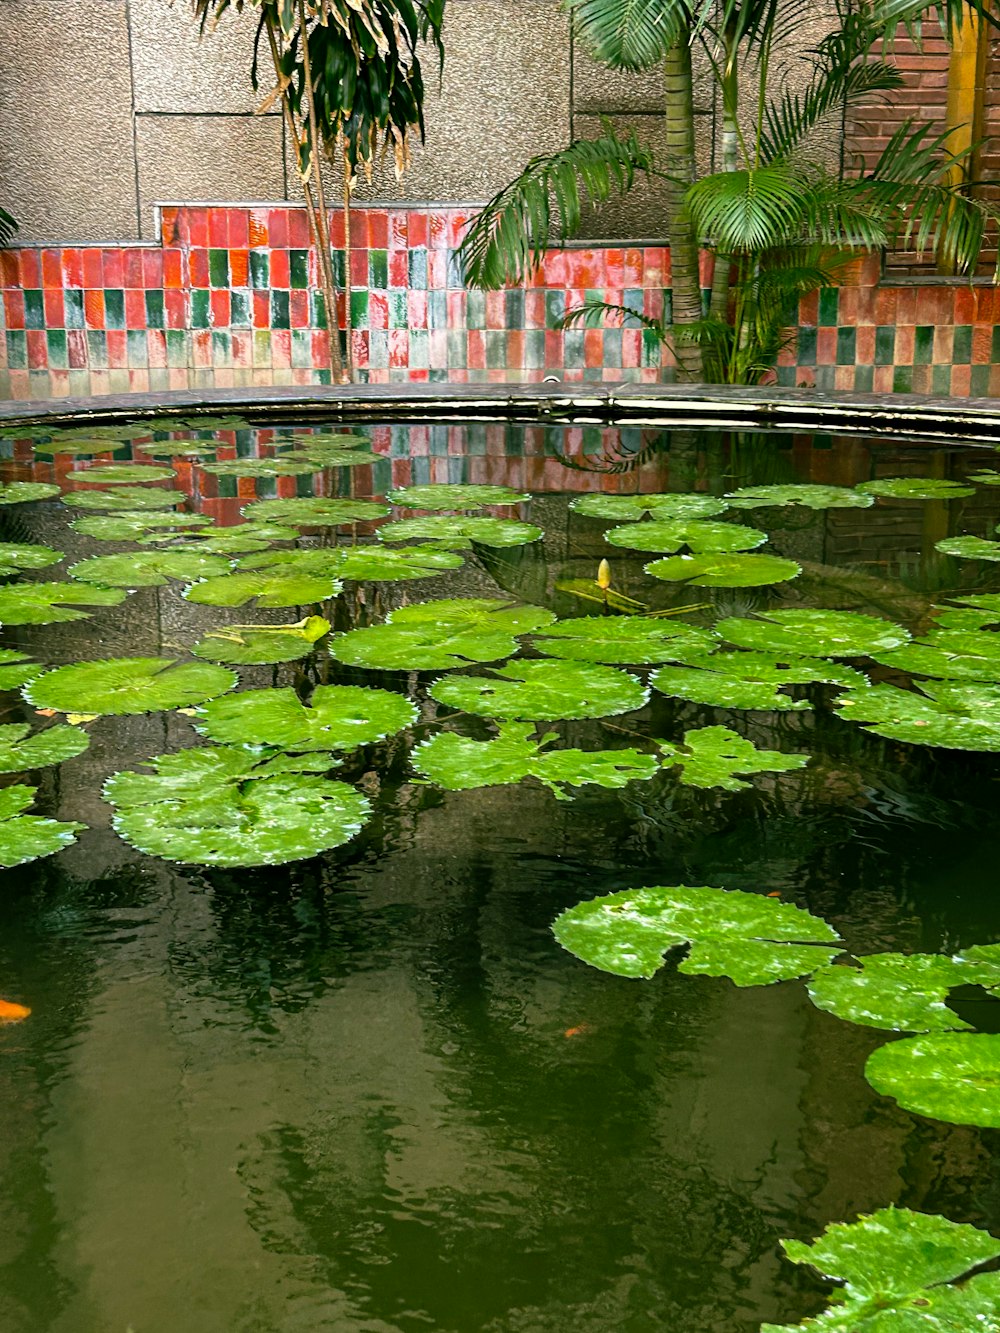 たくさんの緑の睡蓮でいっぱいの池